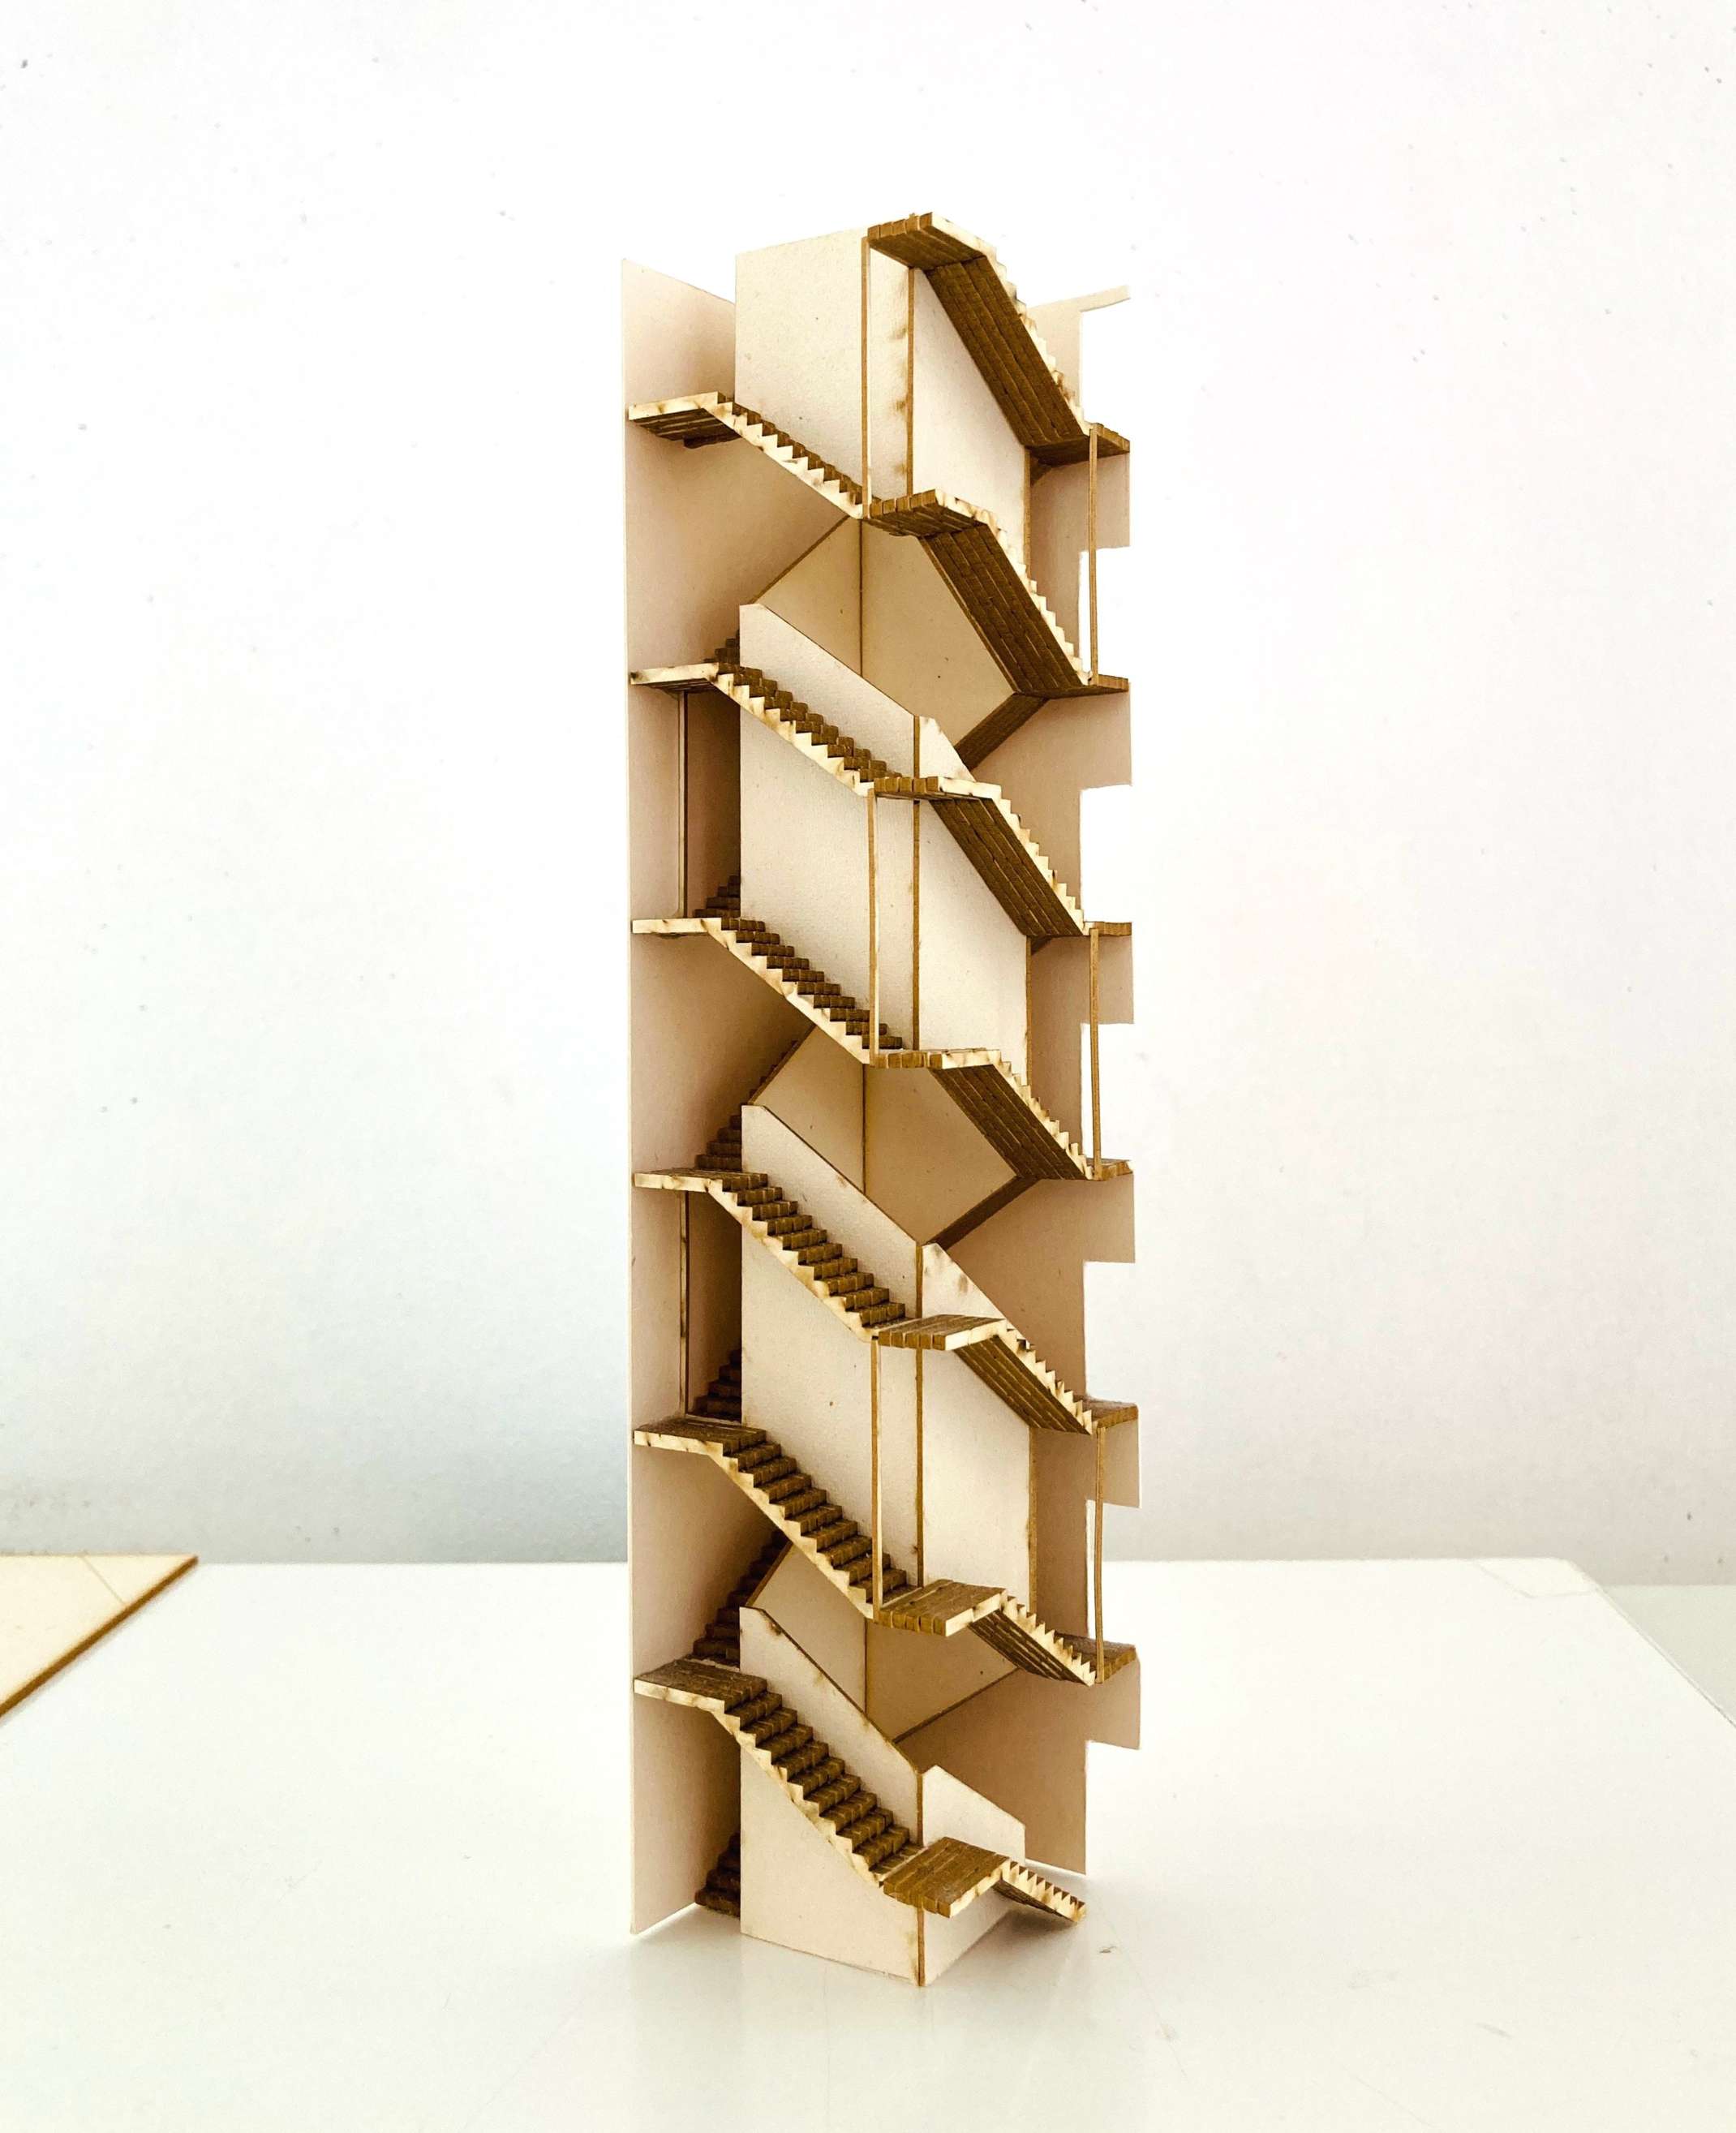 Modell der Treppenerschließung in Form einer Doppelhelix mit Fluchtweg